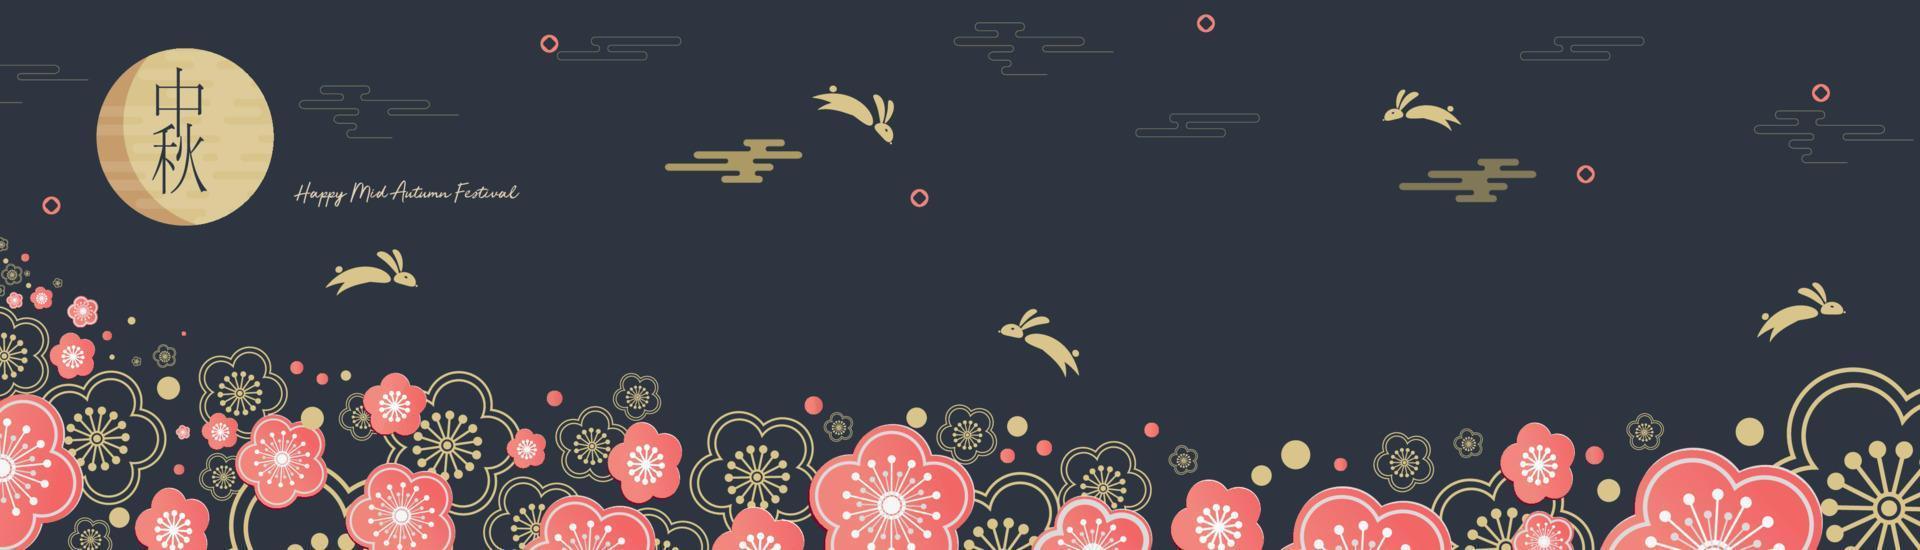 Mittherbstfest. springende Hasen. Chuseok, chinesische Übersetzung Mitte Herbst. Vektorbanner, Hintergrund und Poster vektor